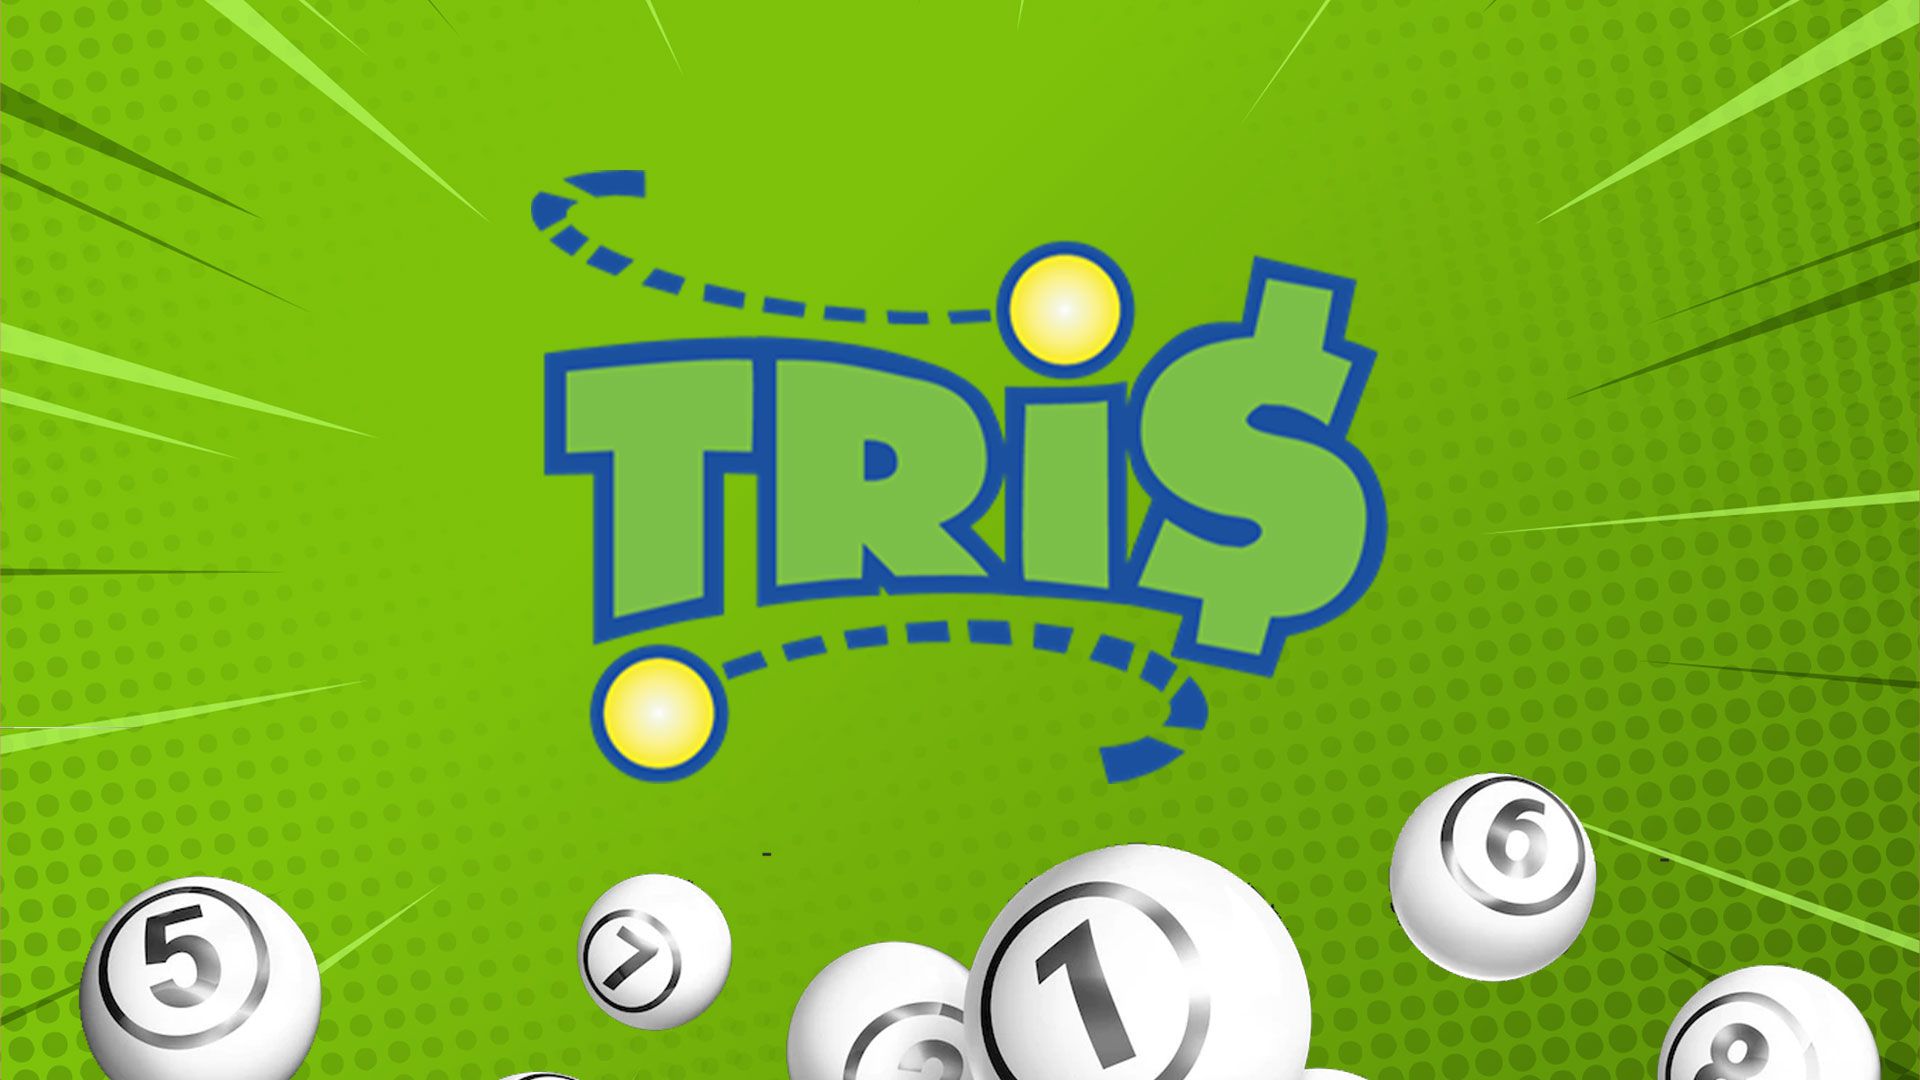 Las personas pueden jugar Tris pagando desde un peso con la posibilidad de ganar hasta 50 mil pesos (Infobae/Jovani Pérez)